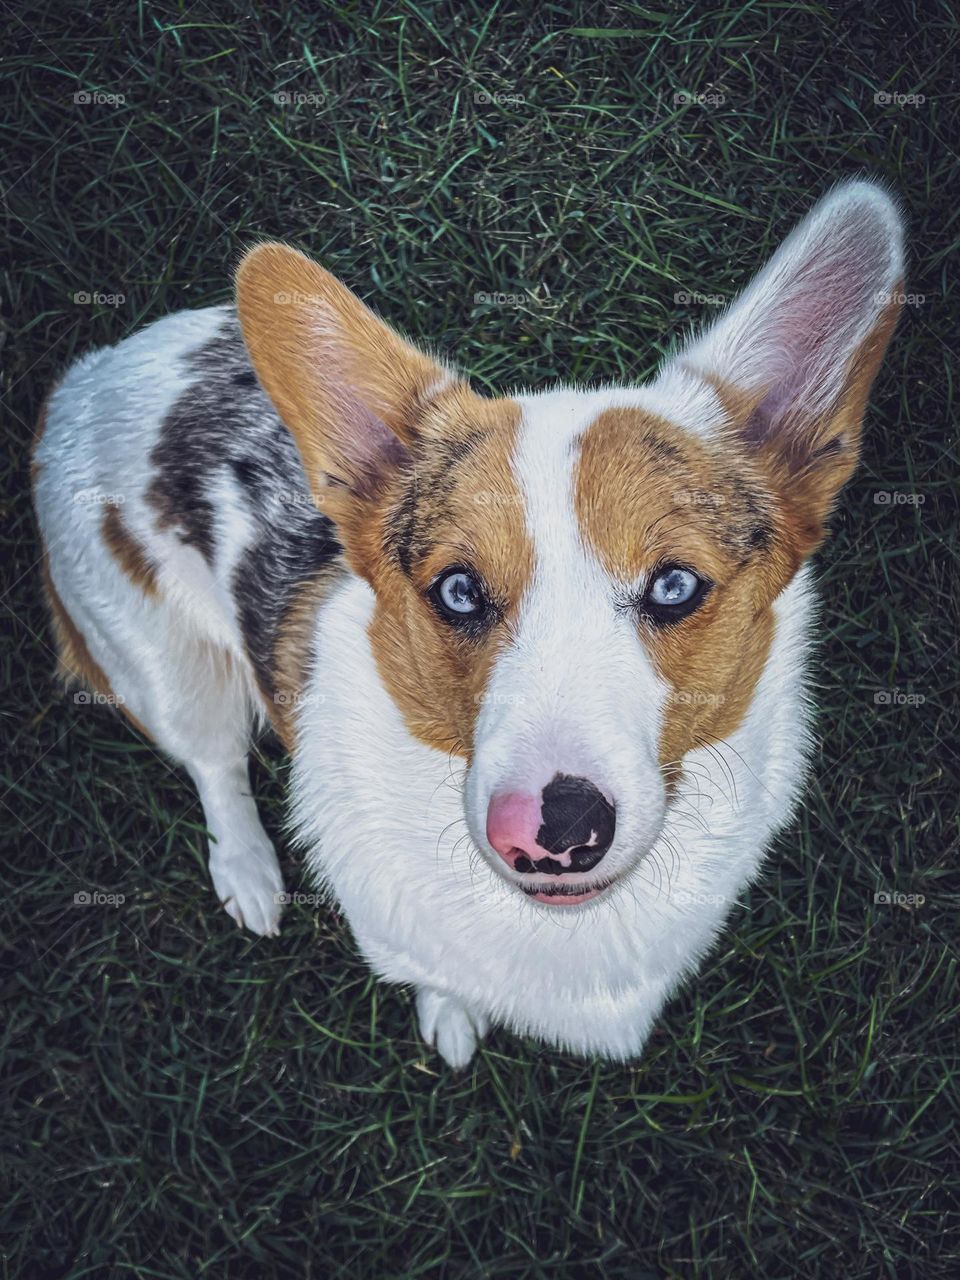 Dog pet corgi phone photography blue eyes happy smile smiling outside sitting moody photo photography picture 